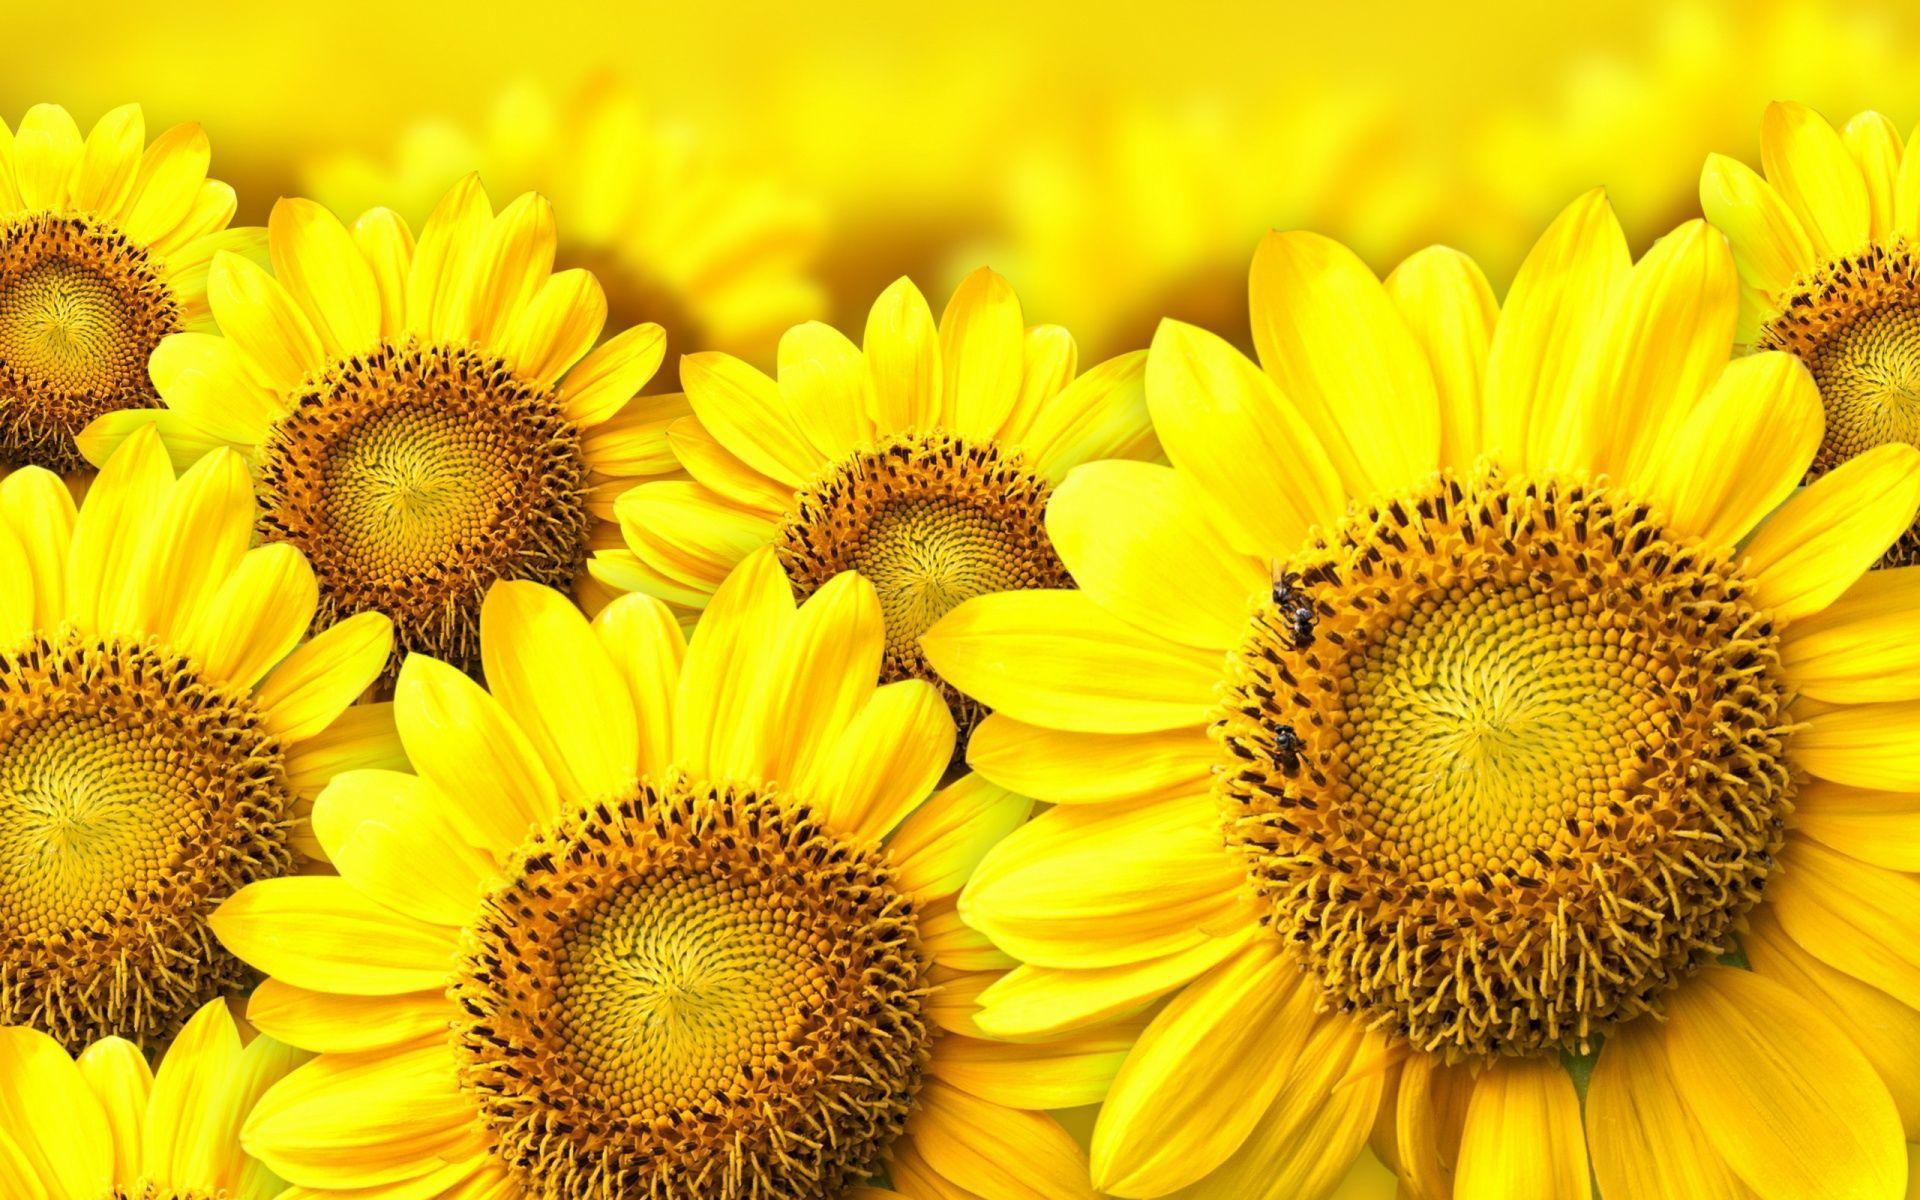 Hoa hướng dương vàng là biểu tượng của tình yêu và sự phát triển. Hình nền máy tính với hoa hướng dương vàng này sẽ giúp bạn tìm lại năng lượng và phong độ. Hãy xem ngay để cảm nhận được sức mạnh của hoa hướng dương trên nền vàng.